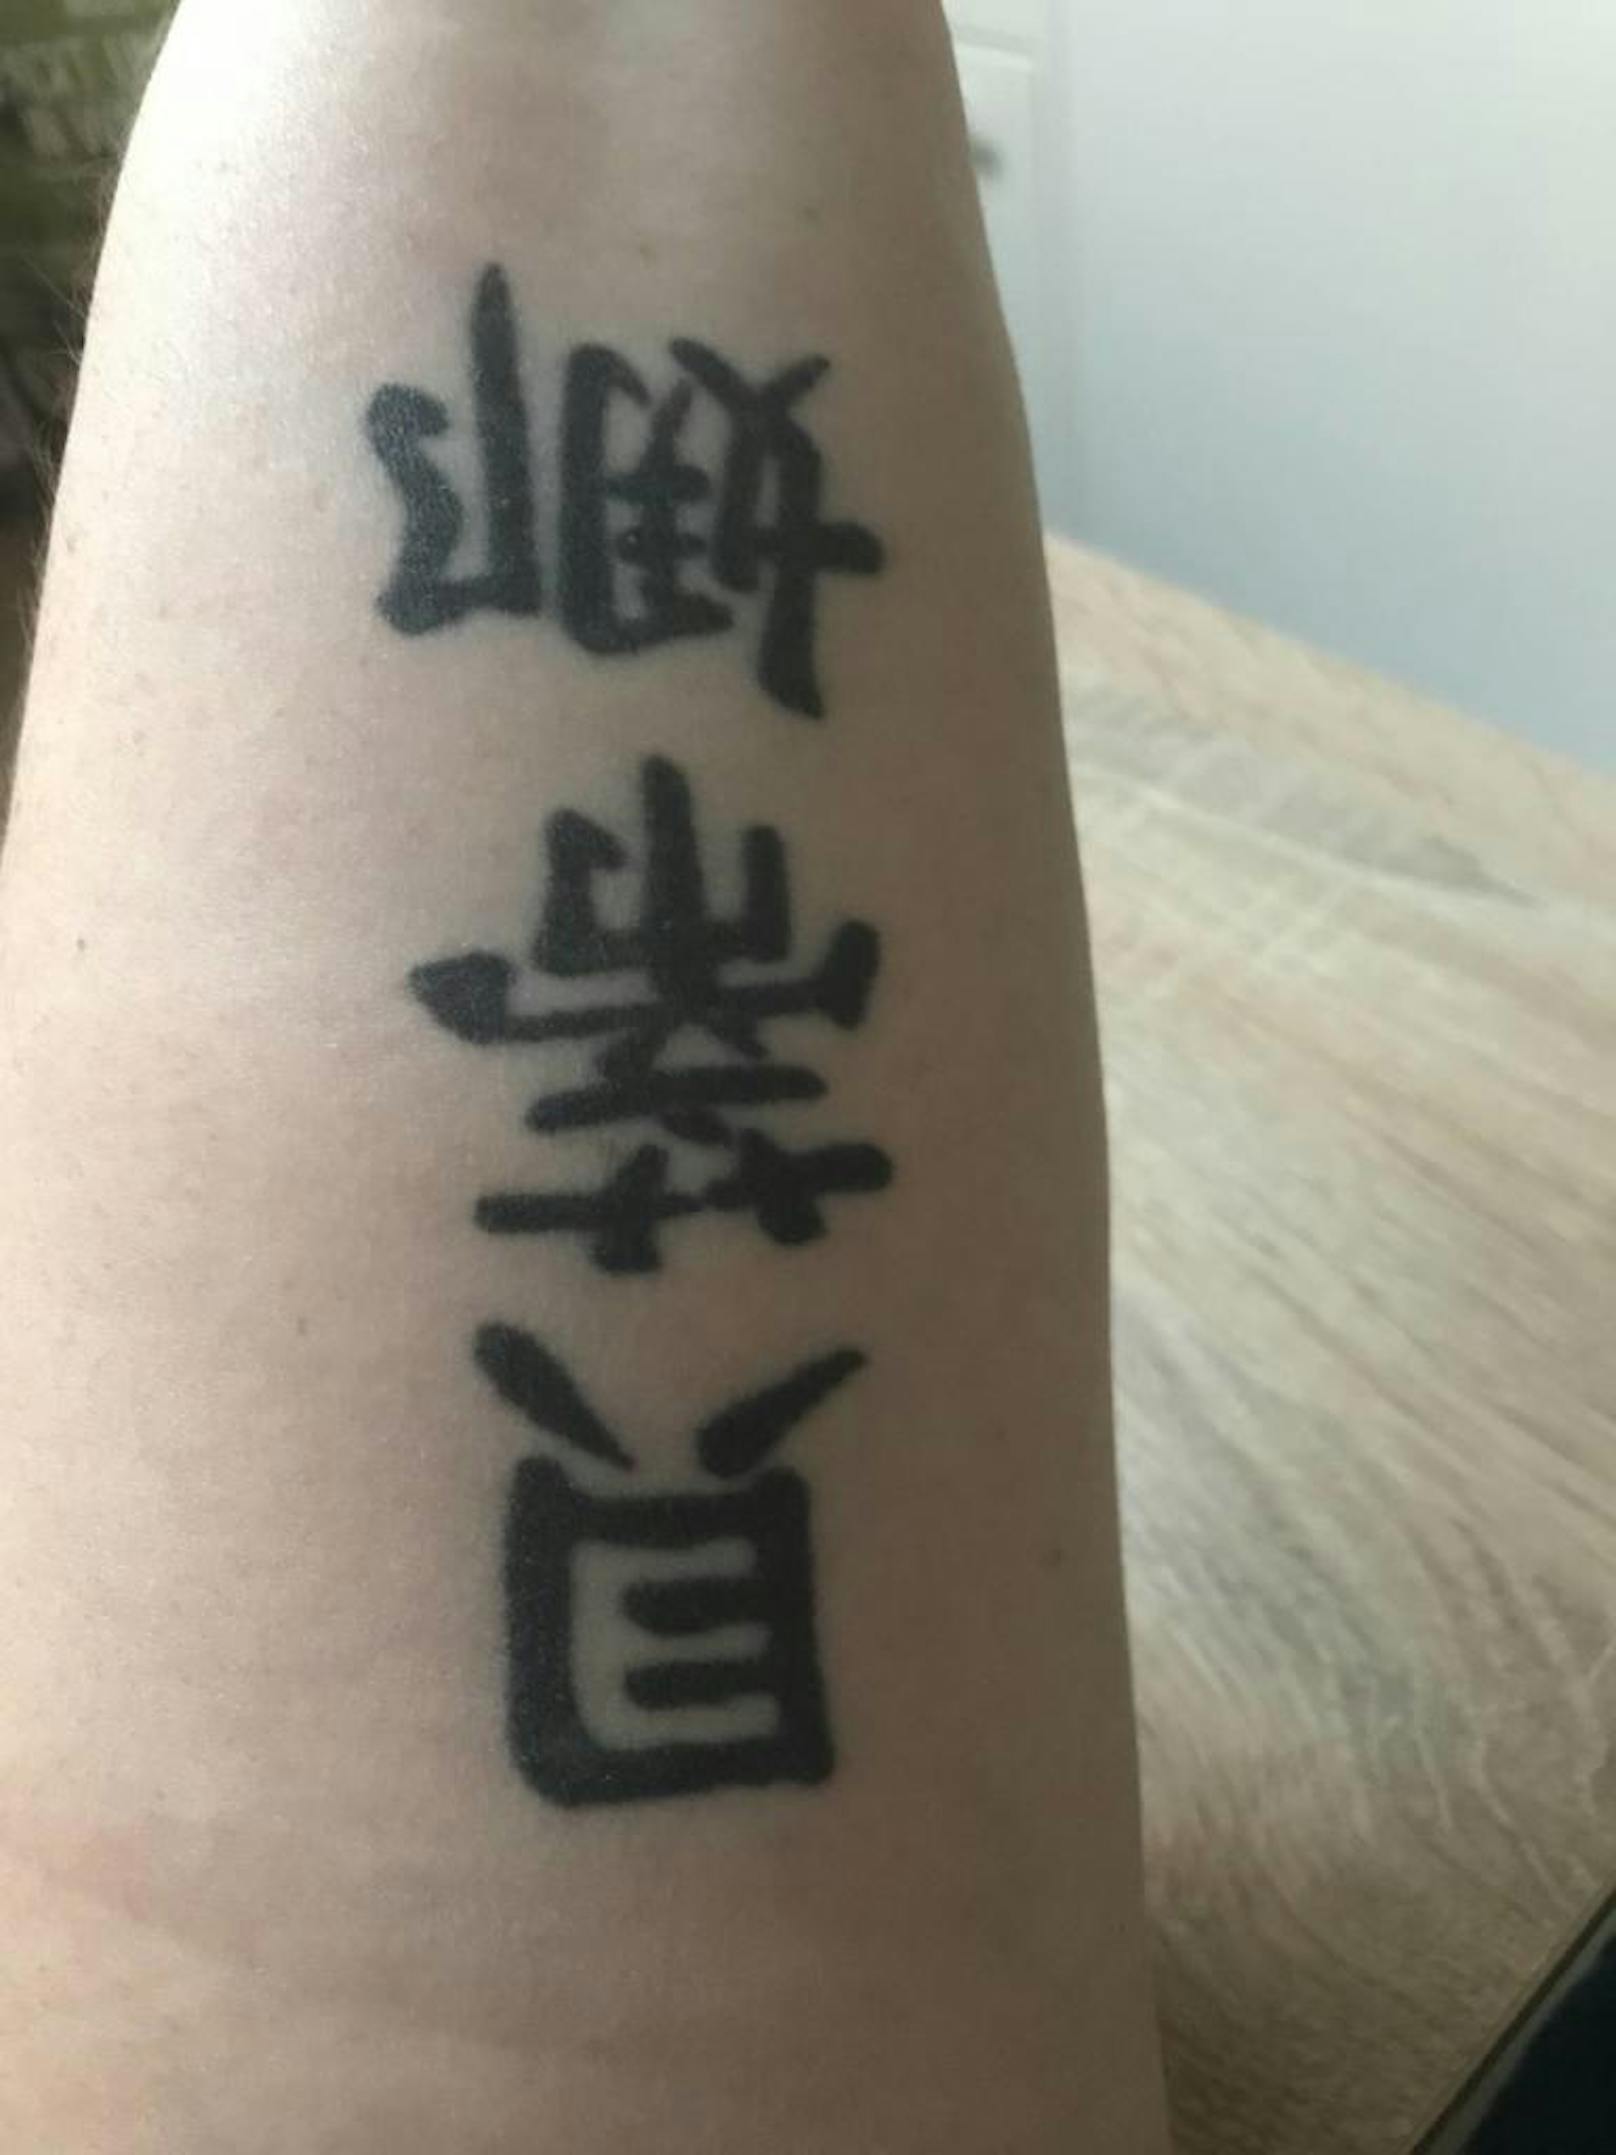 "Die chinesischen Zeichen befinden sich auf meinen Unterarm und soll Bettina bedeuten. Finde es zu dick und groß gestochen. Hätte gerne was anderes darüber. Finde es schrecklich. Gefällt mir einfach nicht mehr mit den Zeichen."